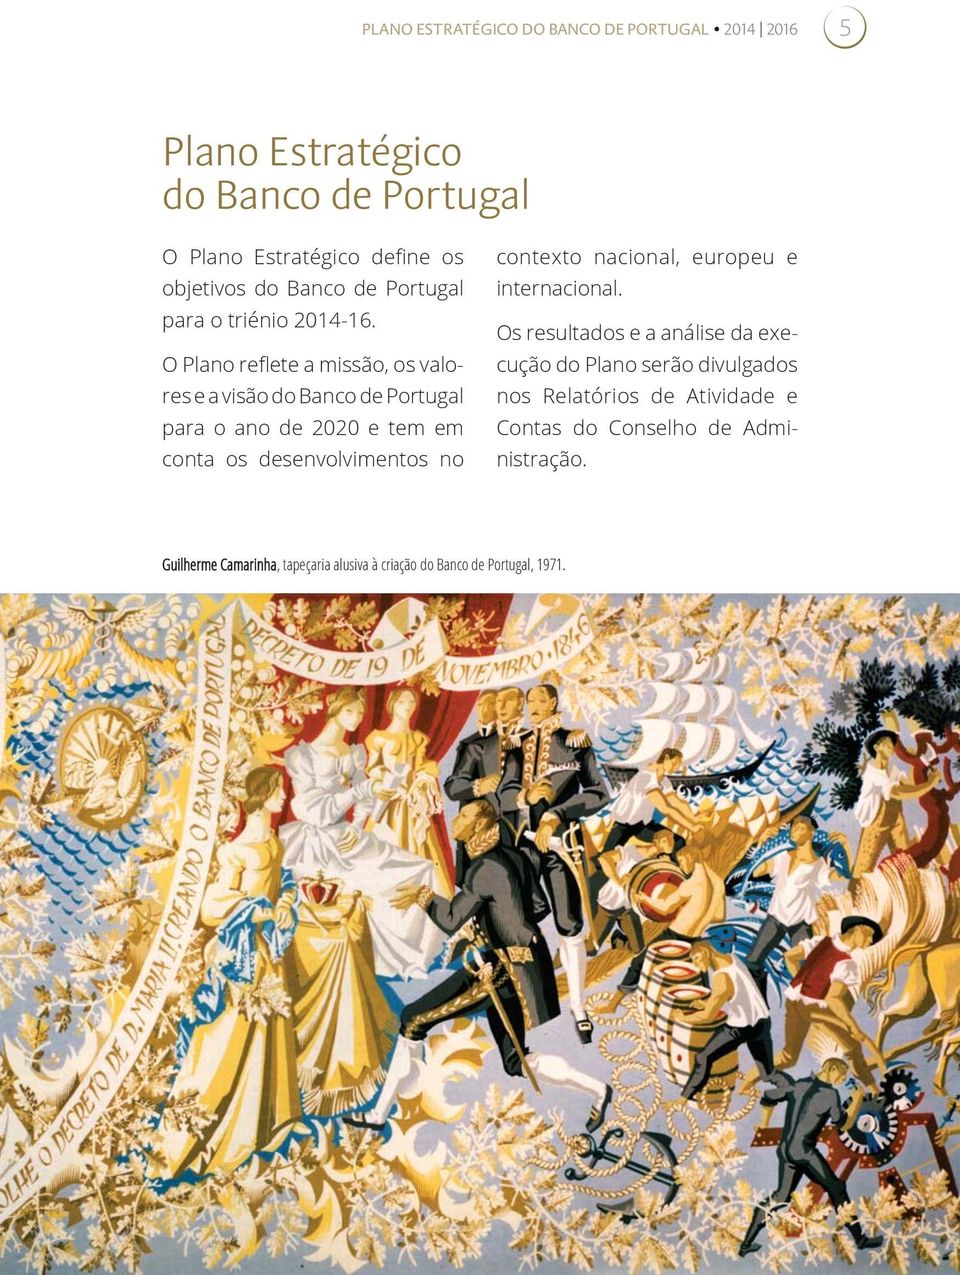 O Plano reflete a missão, os valores e a visão do Banco de Portugal para o ano de 2020 e tem em conta os desenvolvimentos no contexto